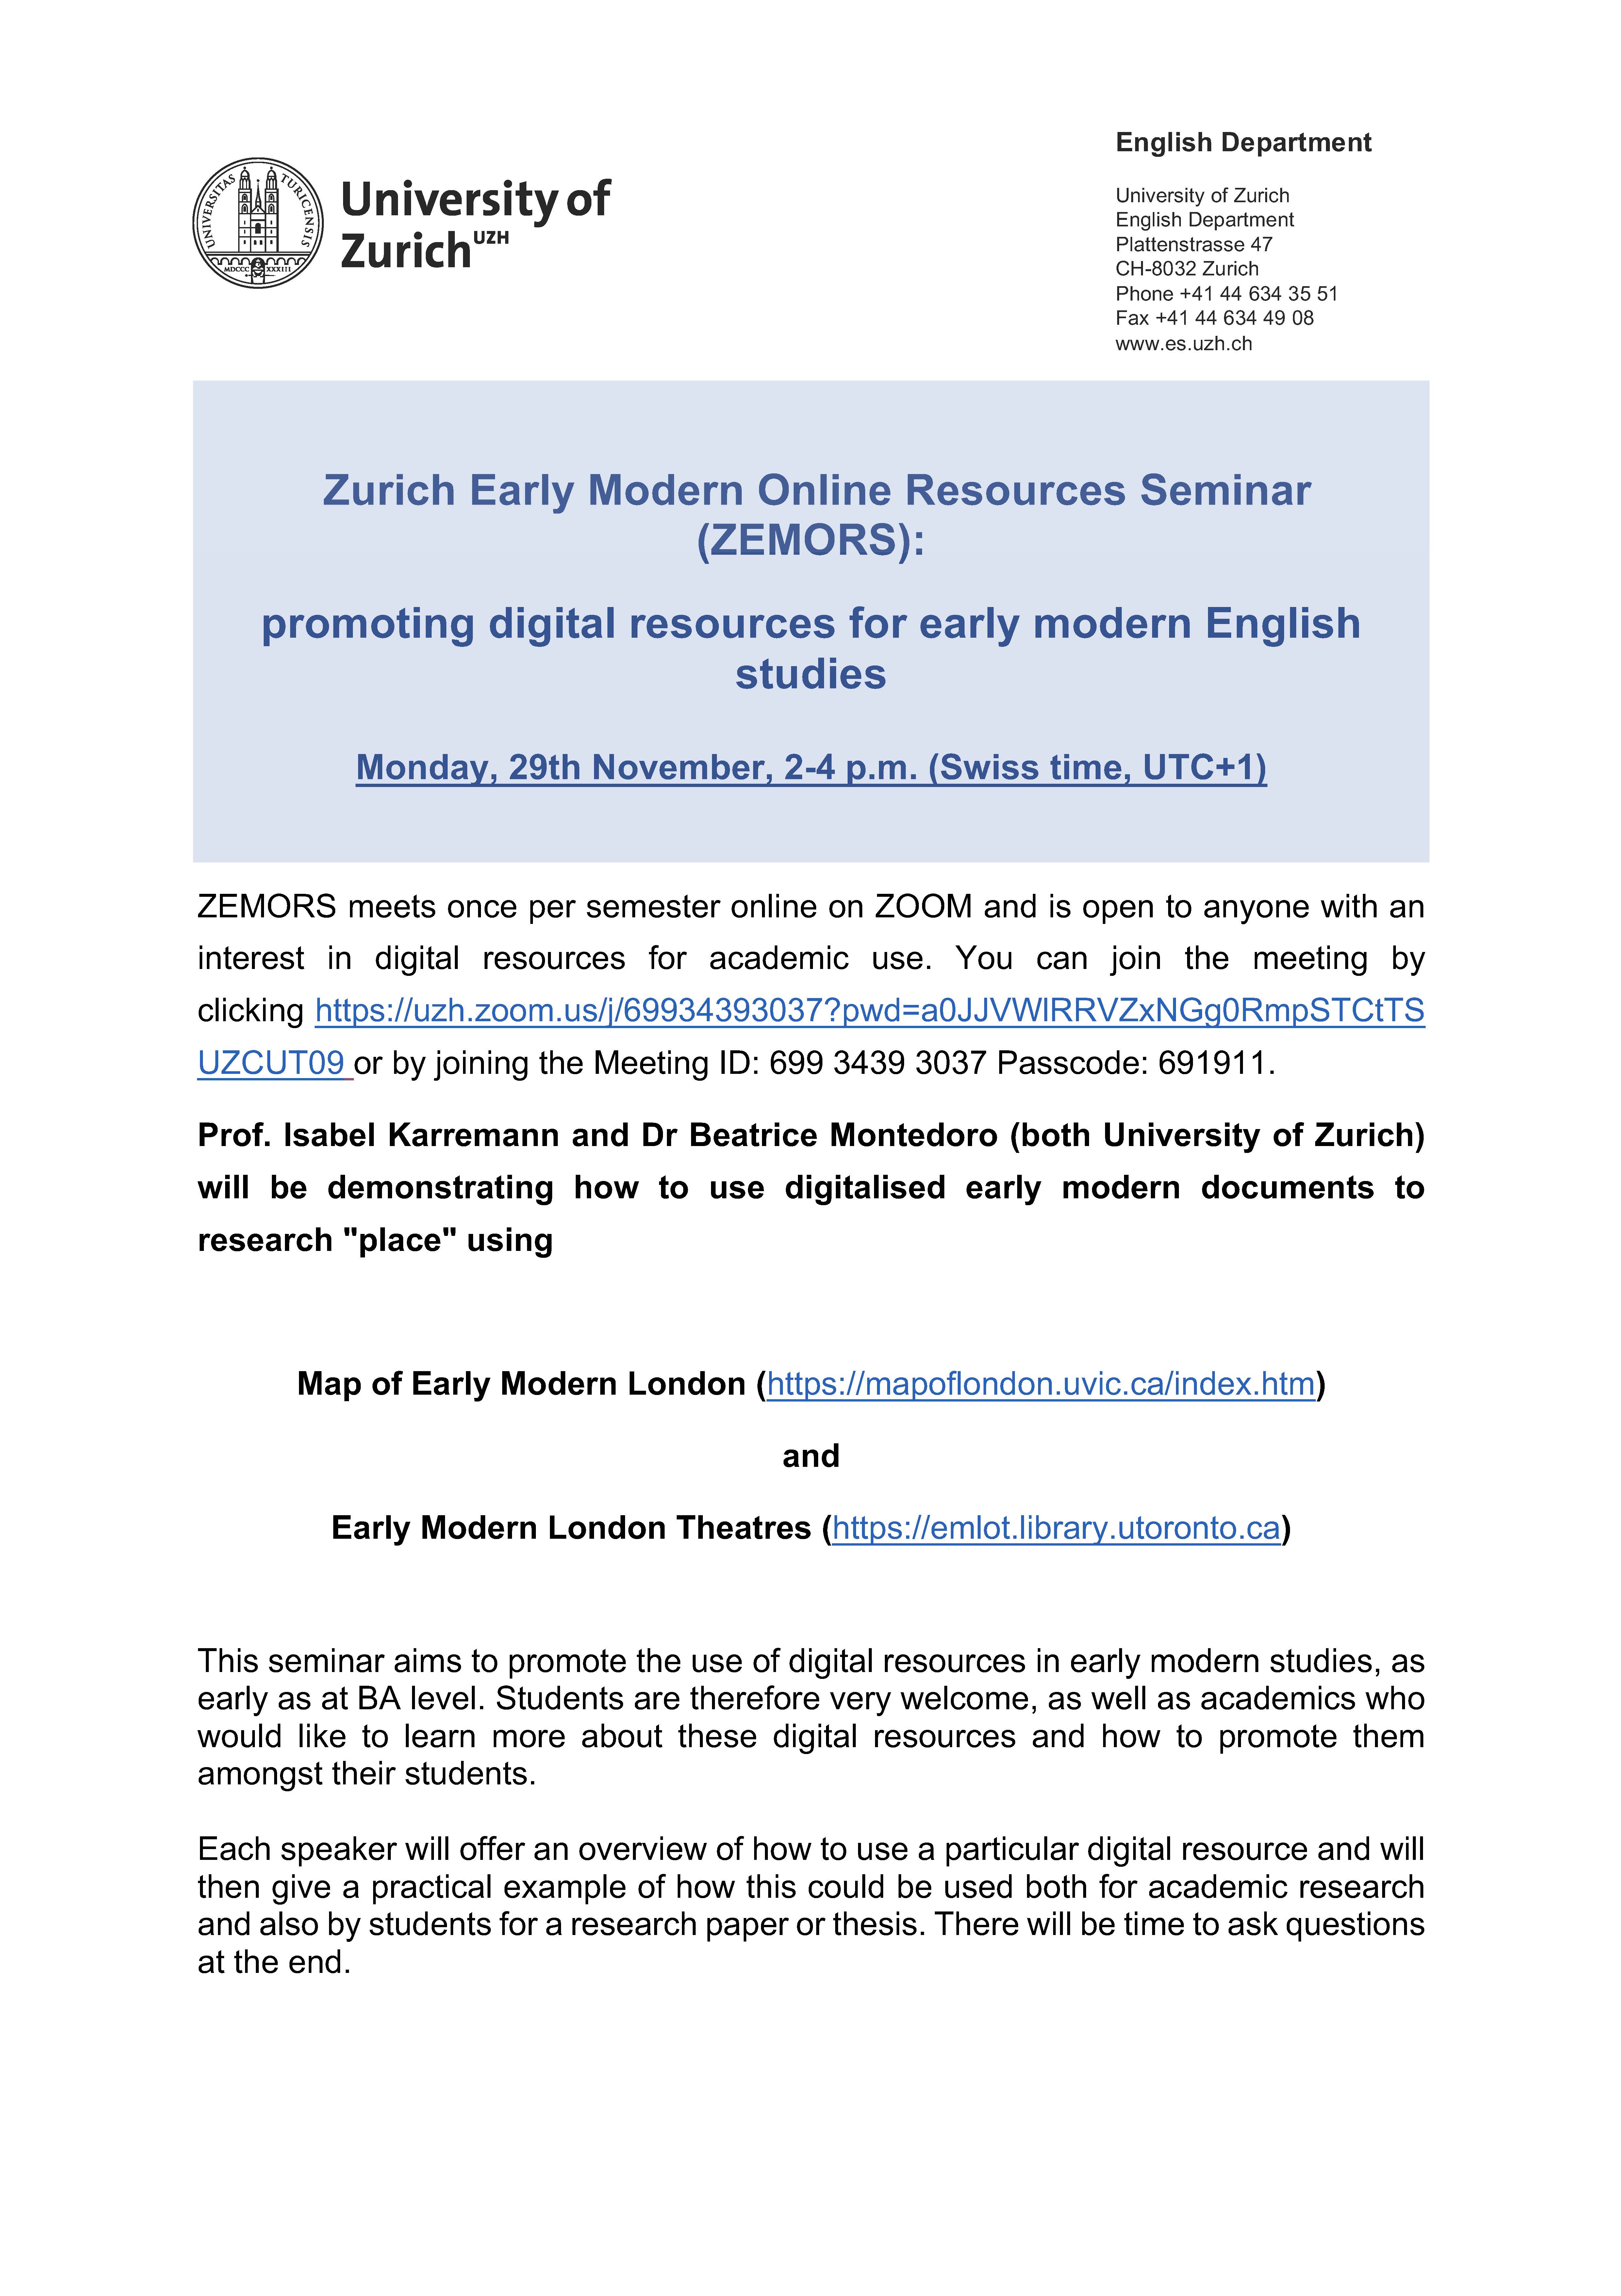 Zurich Early Modern Online Resources Seminar (ZEMORS)